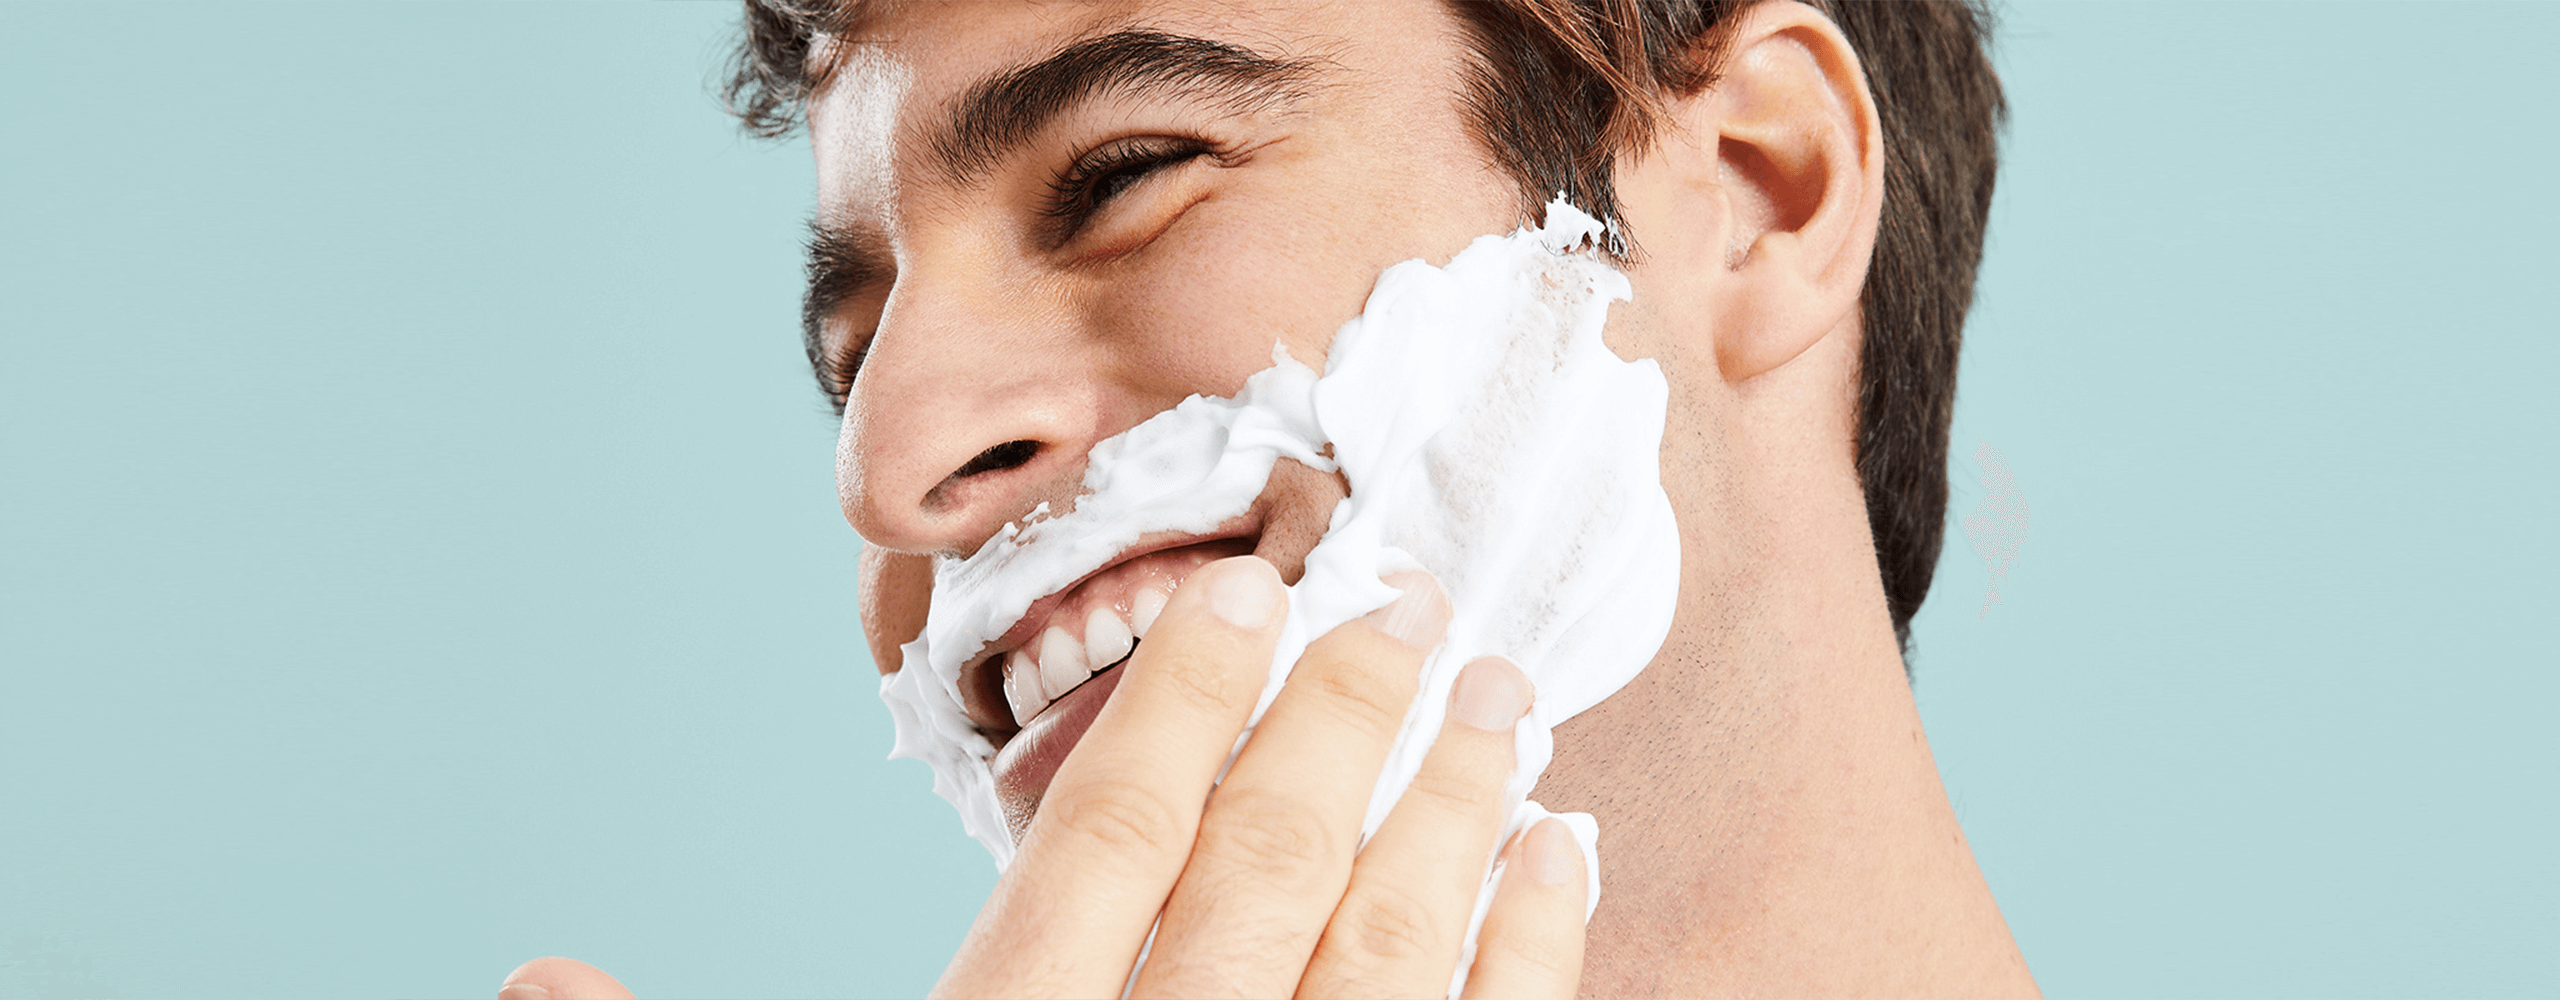 Persona colocandose espuma de afeitar sobre el rostro